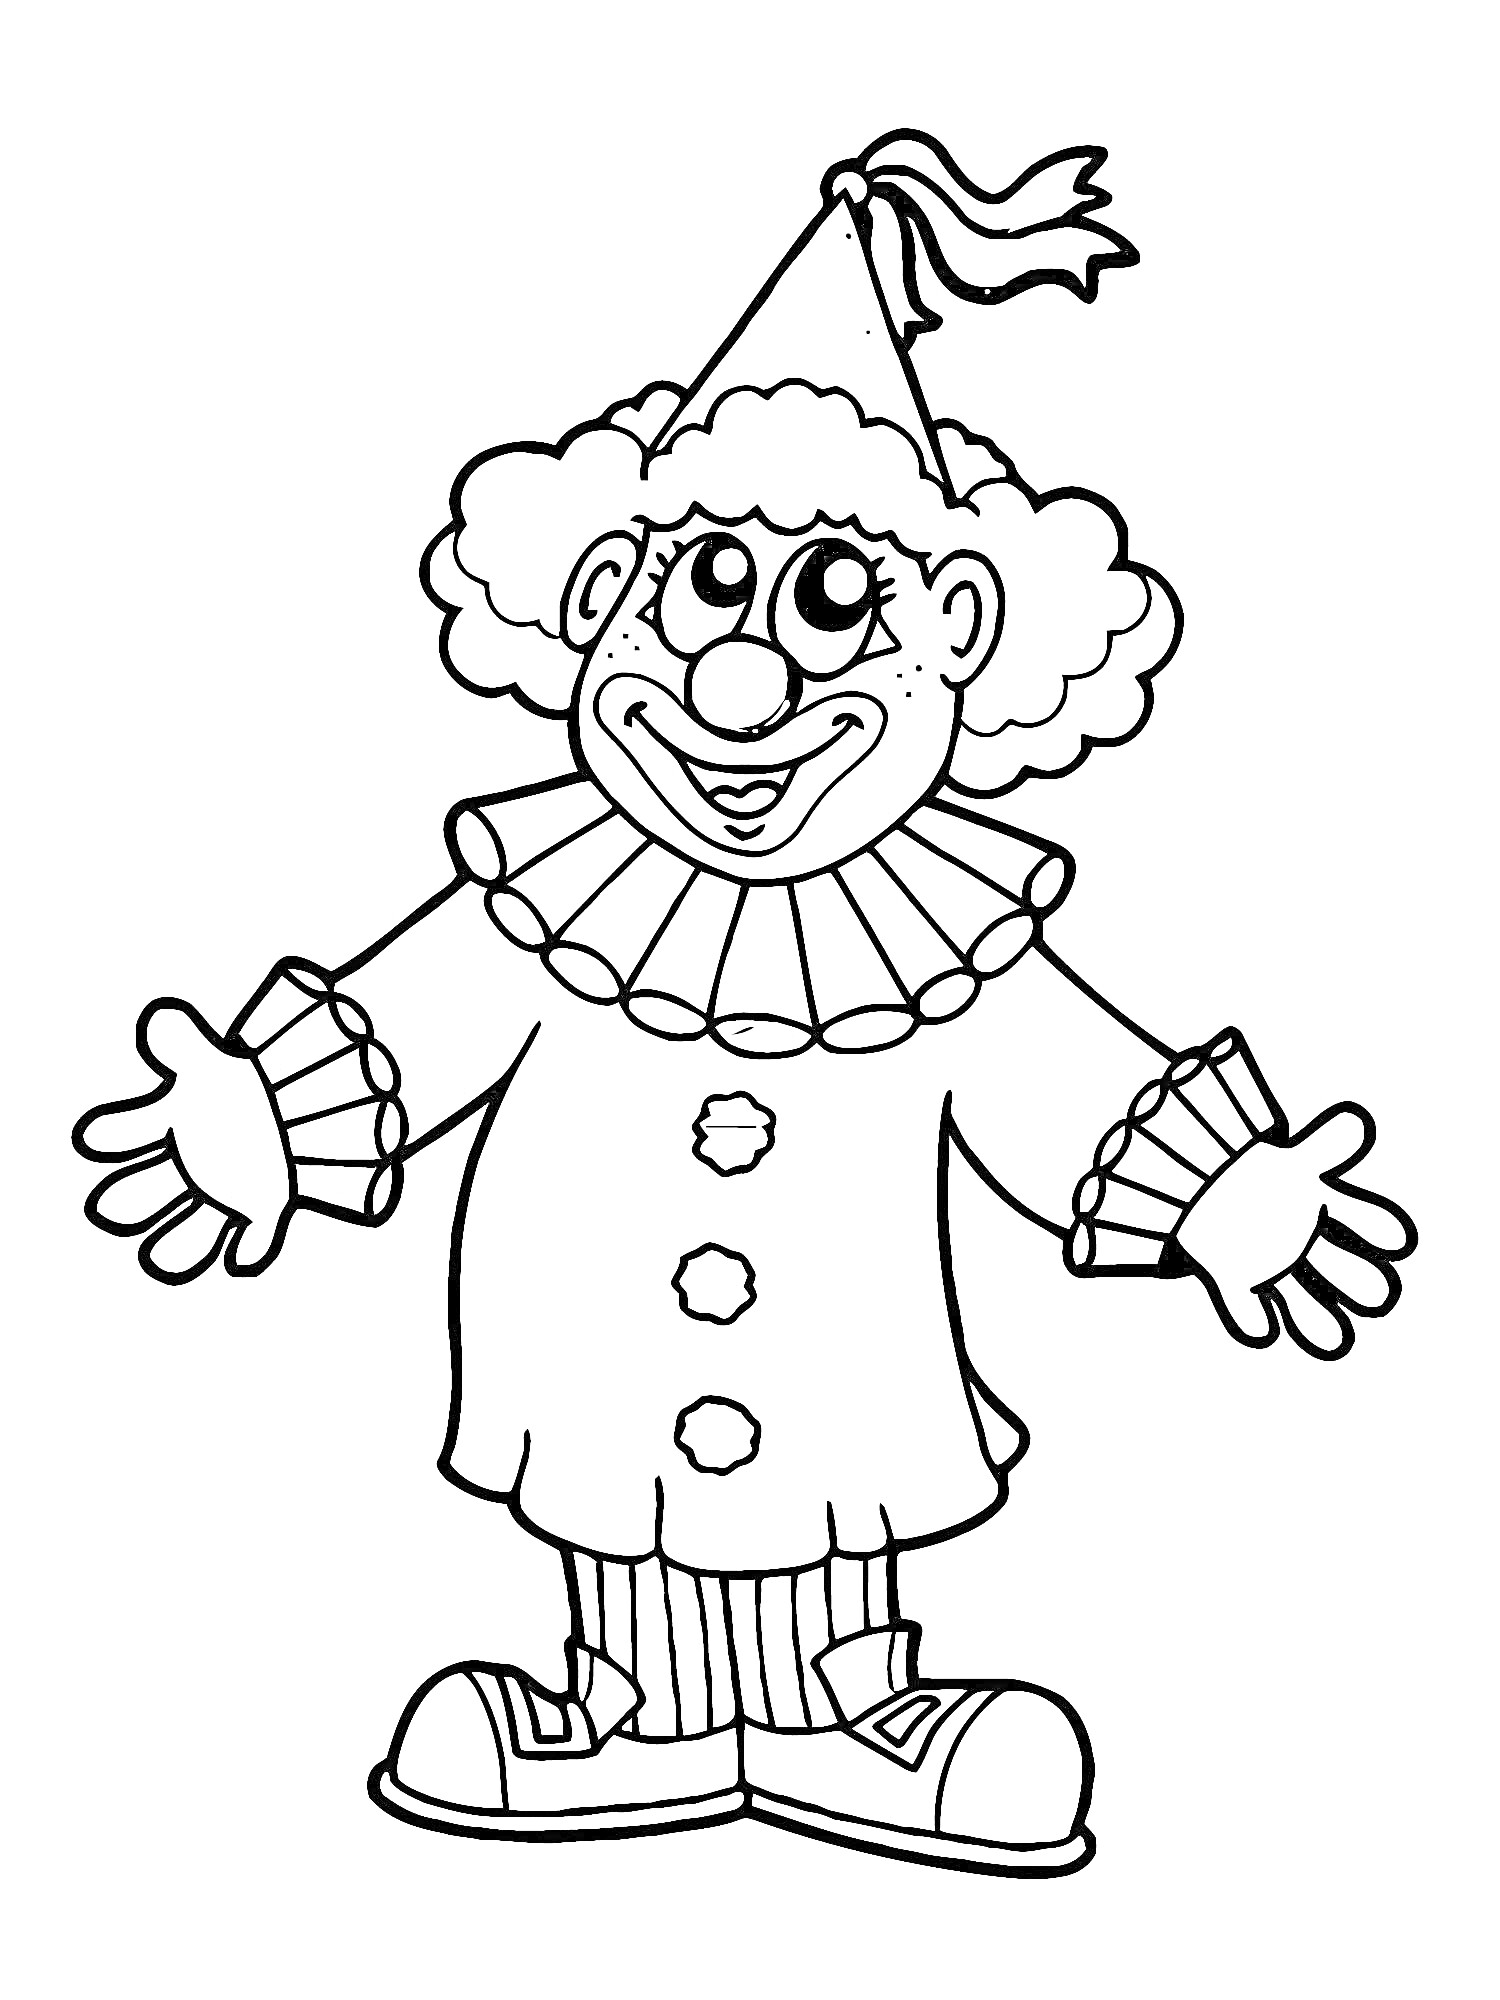 Раскраска Клоун с шапочкой, кудрявыми волосами и крупными пуговицами на костюме